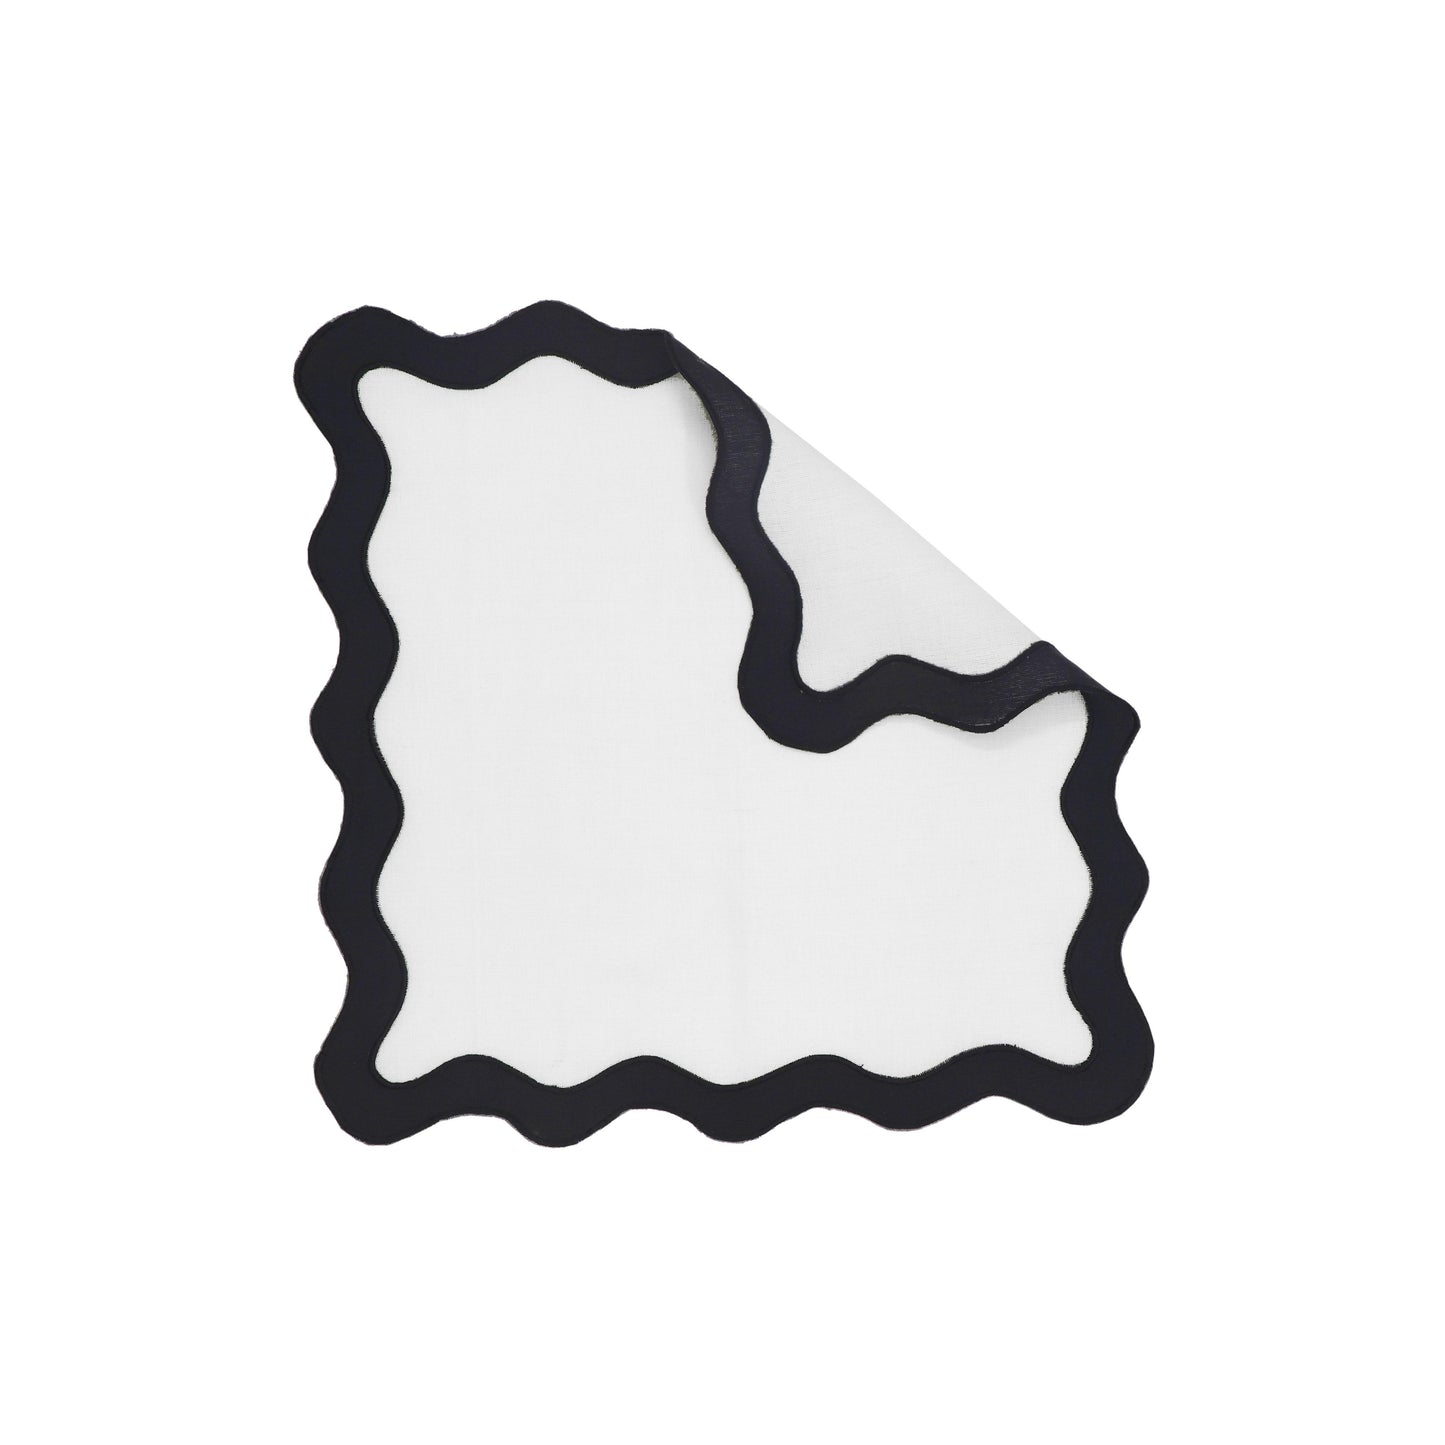 bari edge black and white linen napkin - set of 4